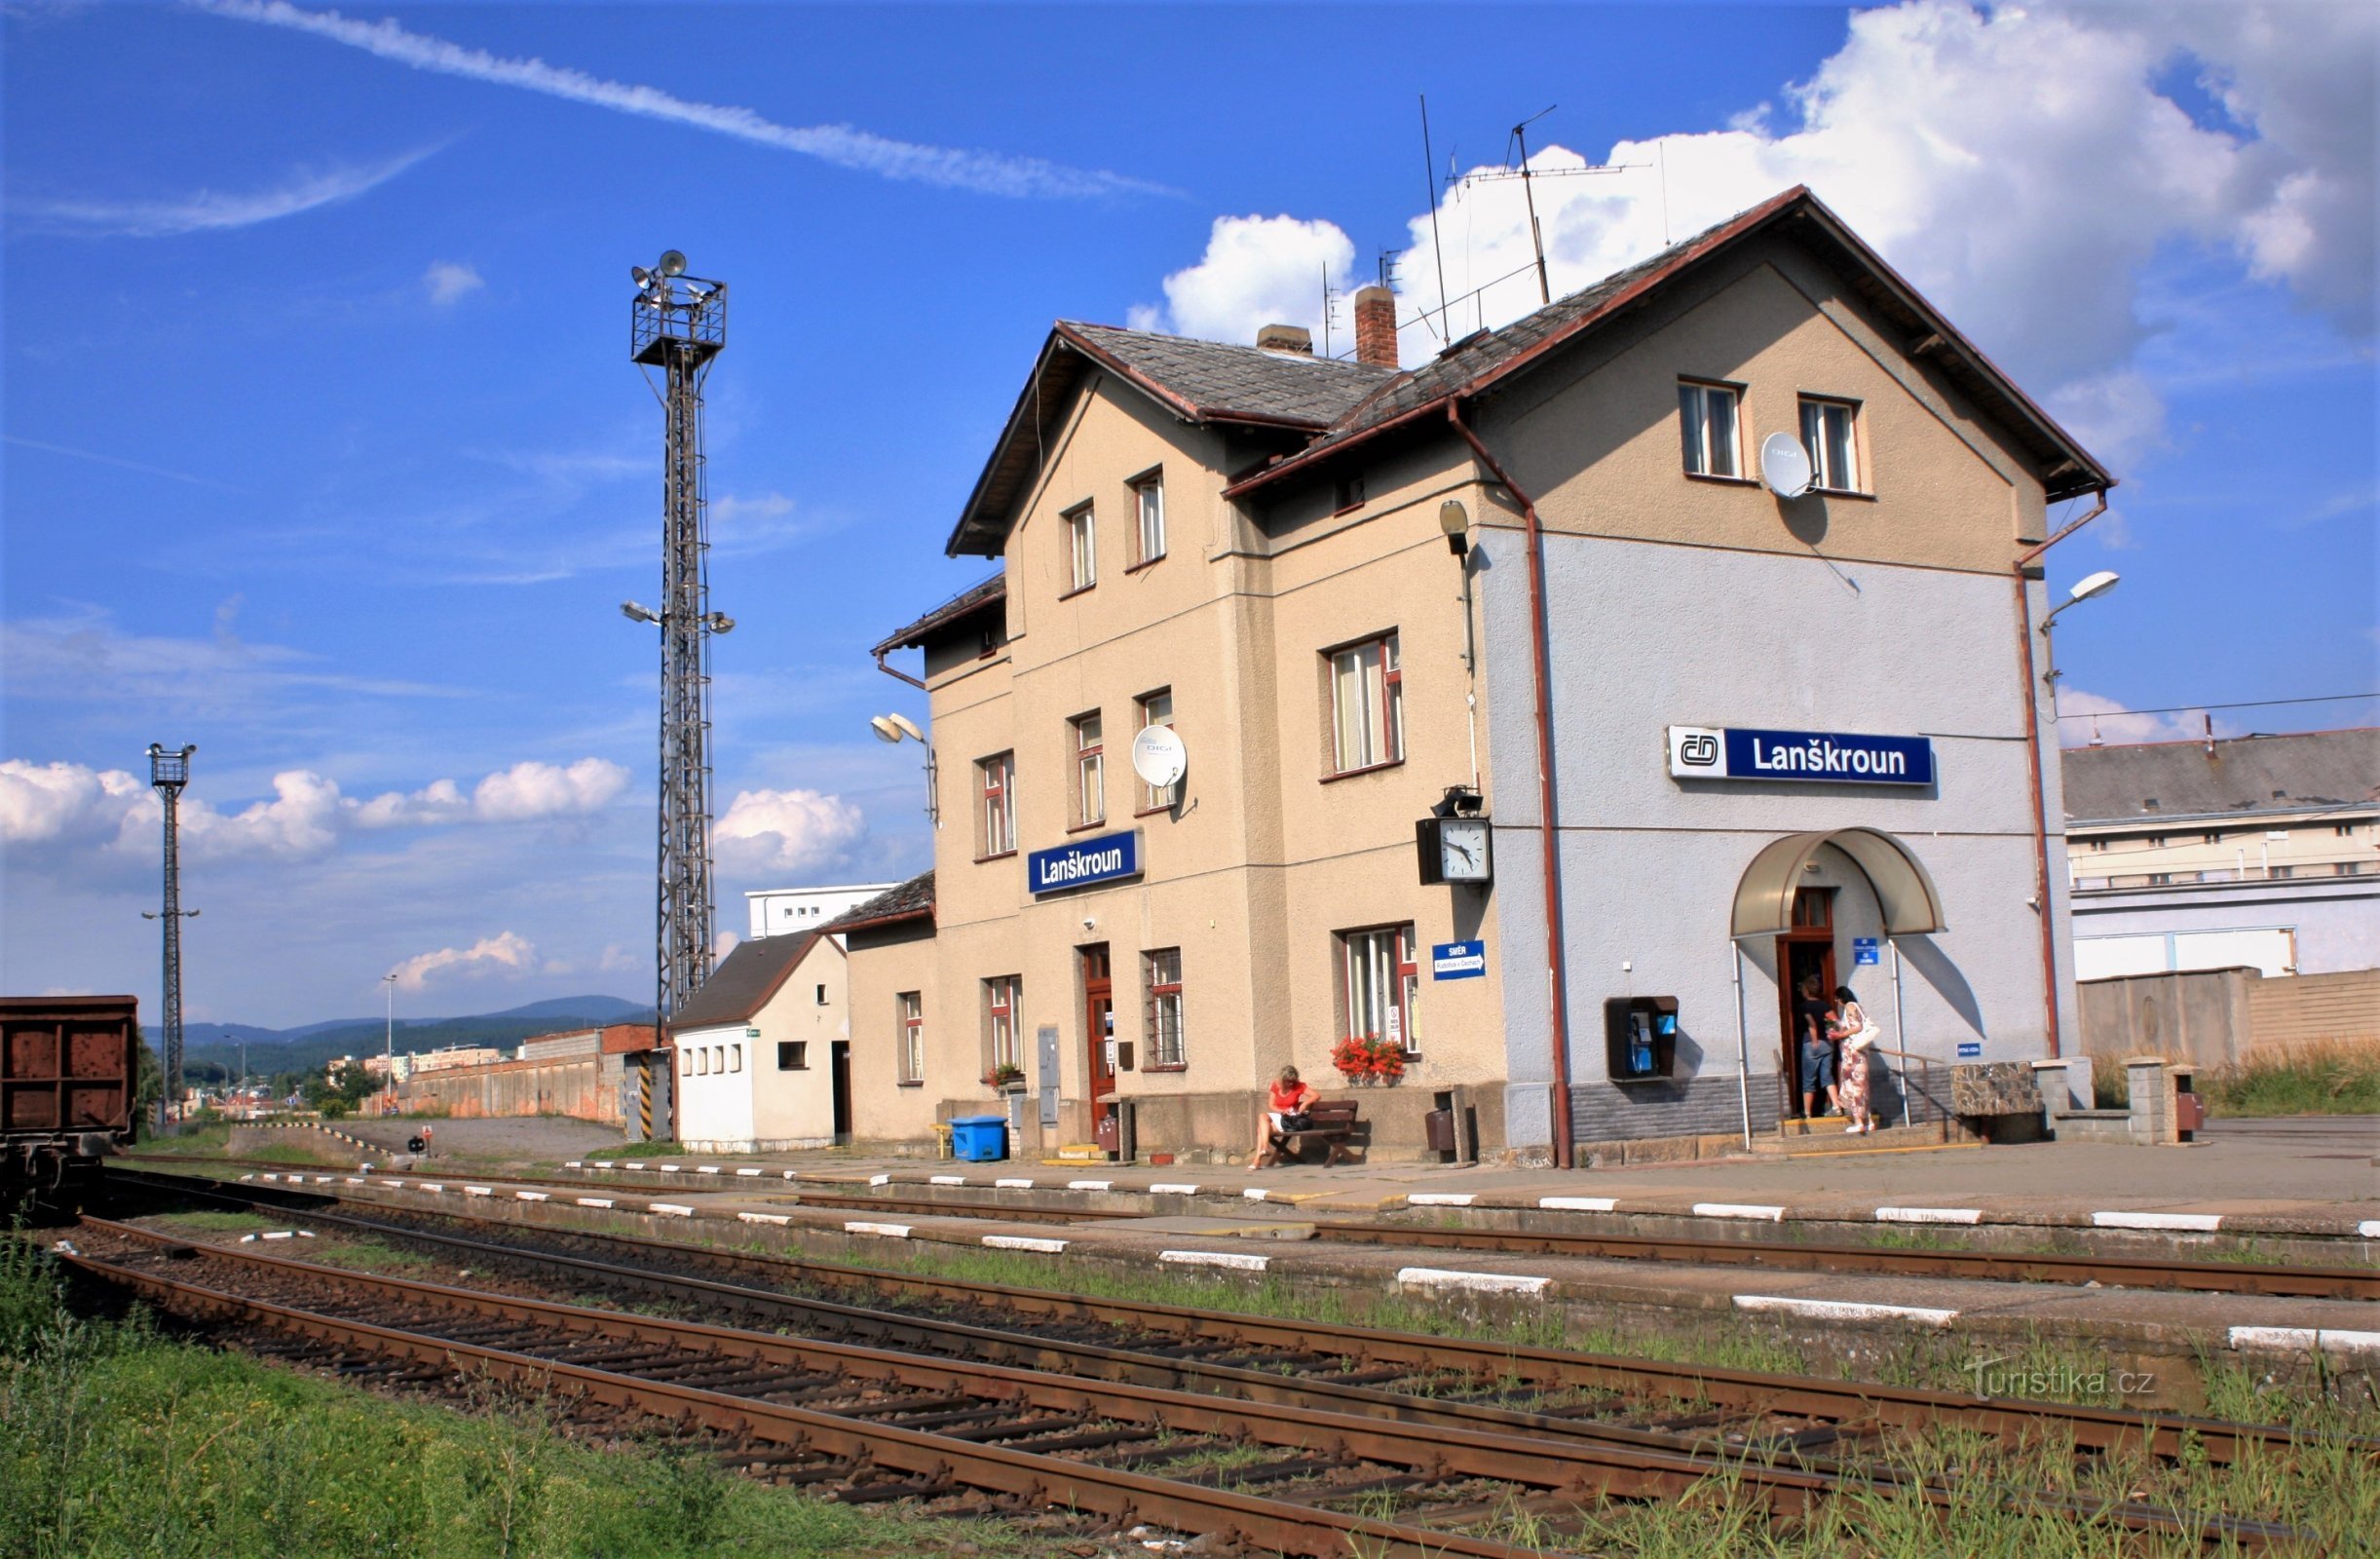 Lanškroun - railway station